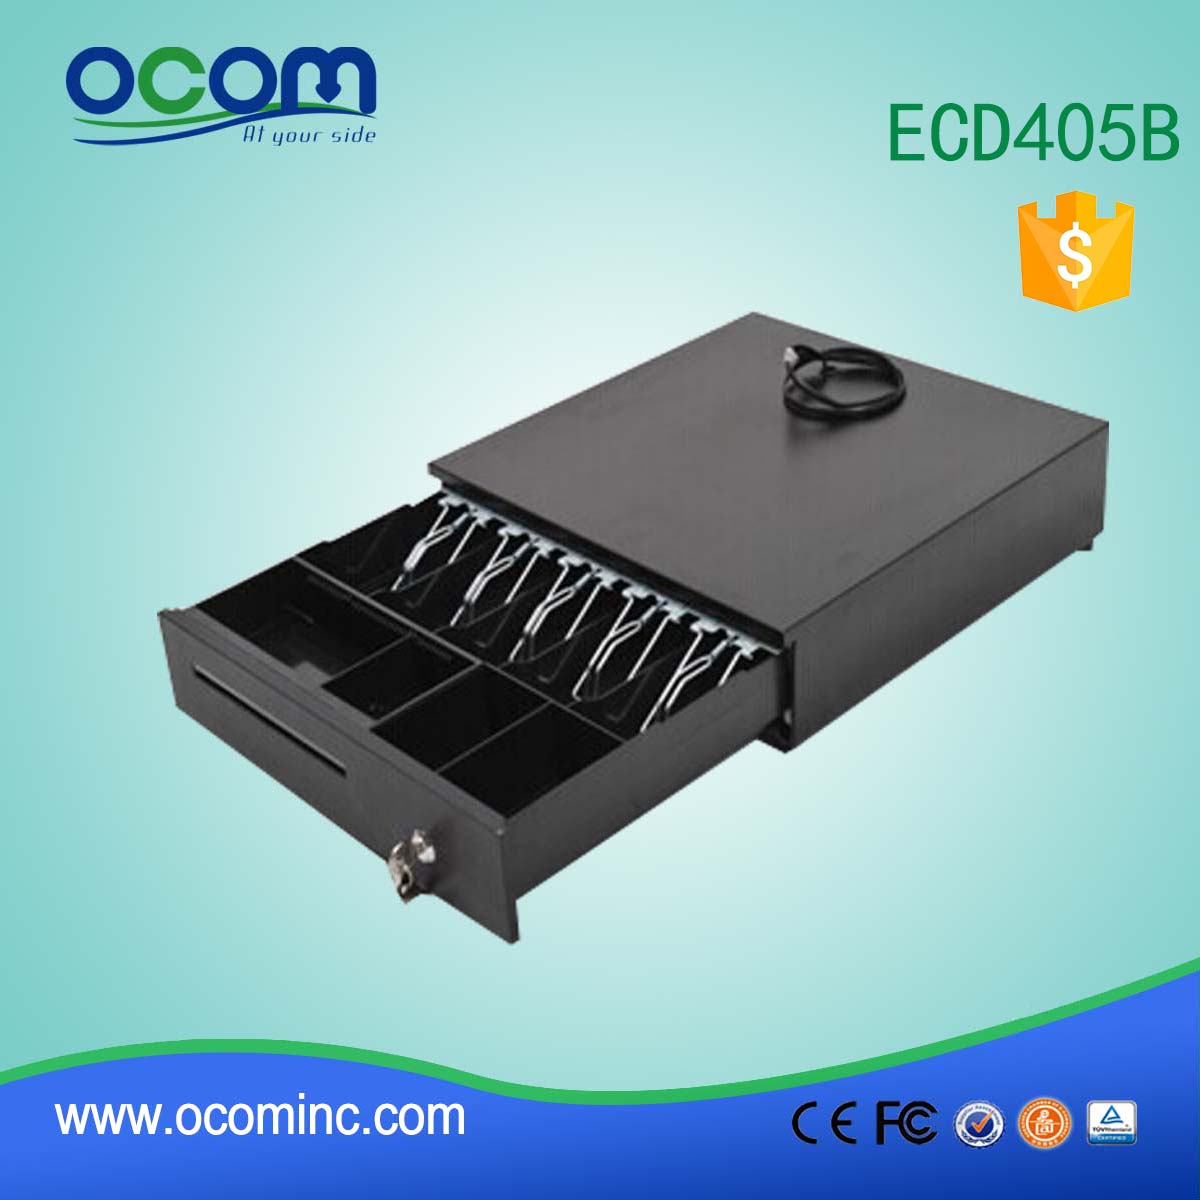 ECD405B Μαύρο μετακινούμενο μετρητά / Θήκη κερμάτων 405mm POS Συρτάρι μετρητών